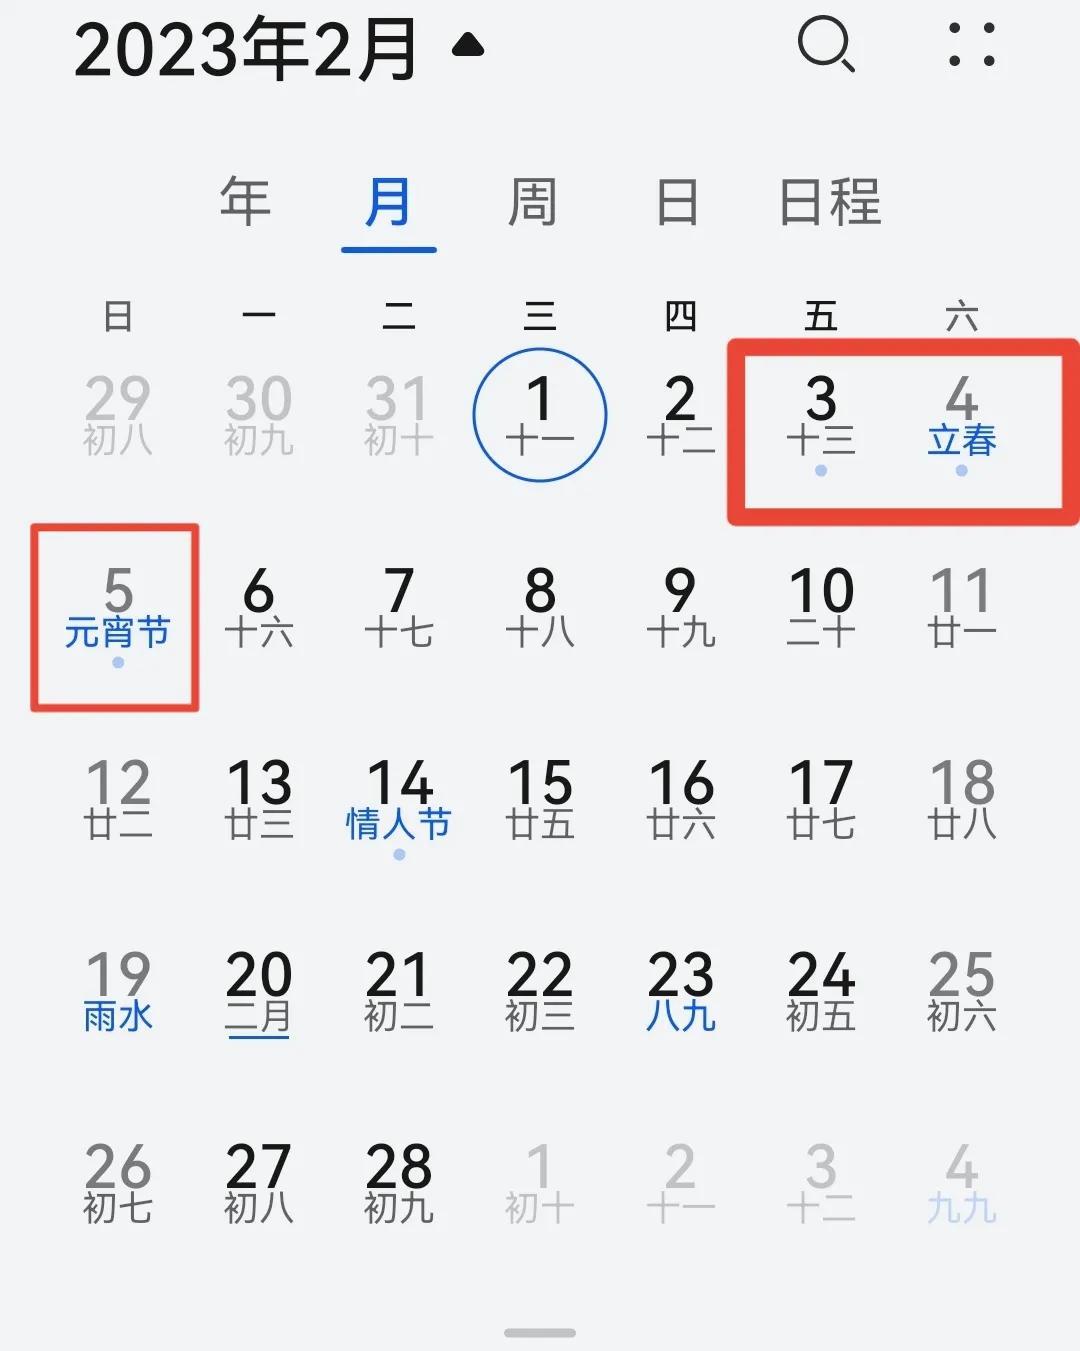 2023年6月23号是黄道吉日吗,2023年假期放假安排时间表及日历